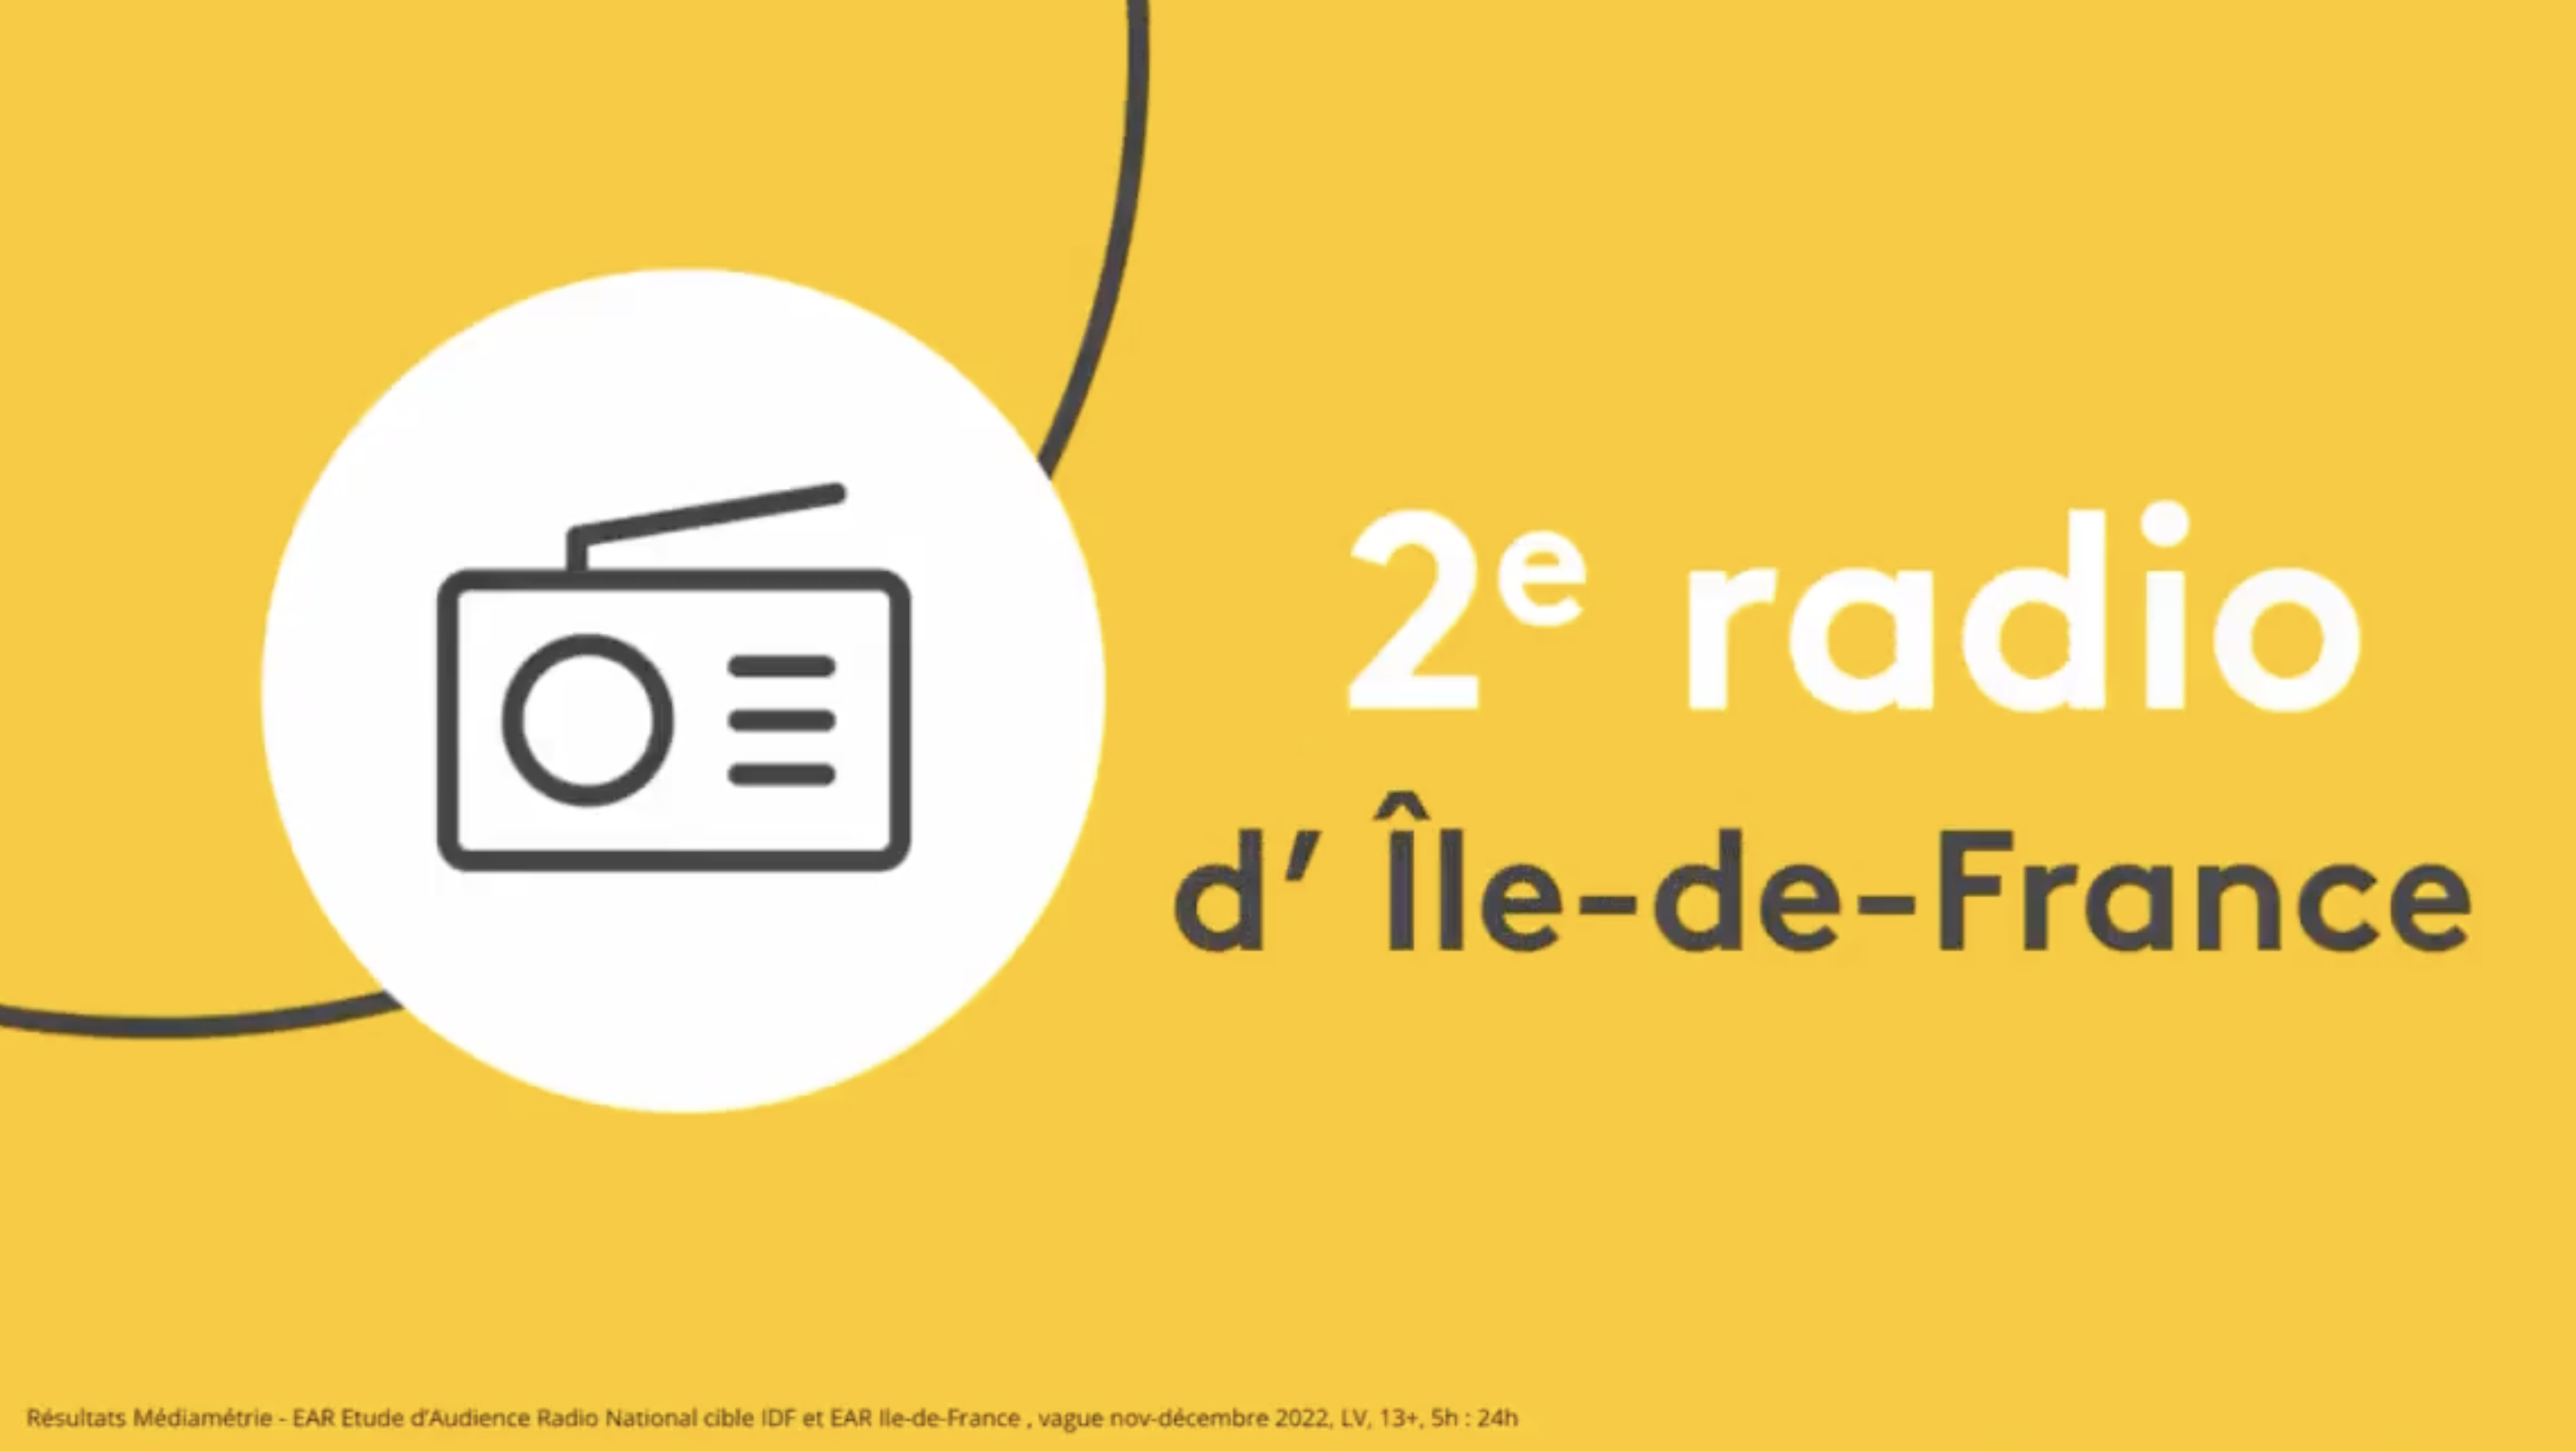 franceinfo : 2e radio d’Île-de-France avec 1 206 000 auditeurs